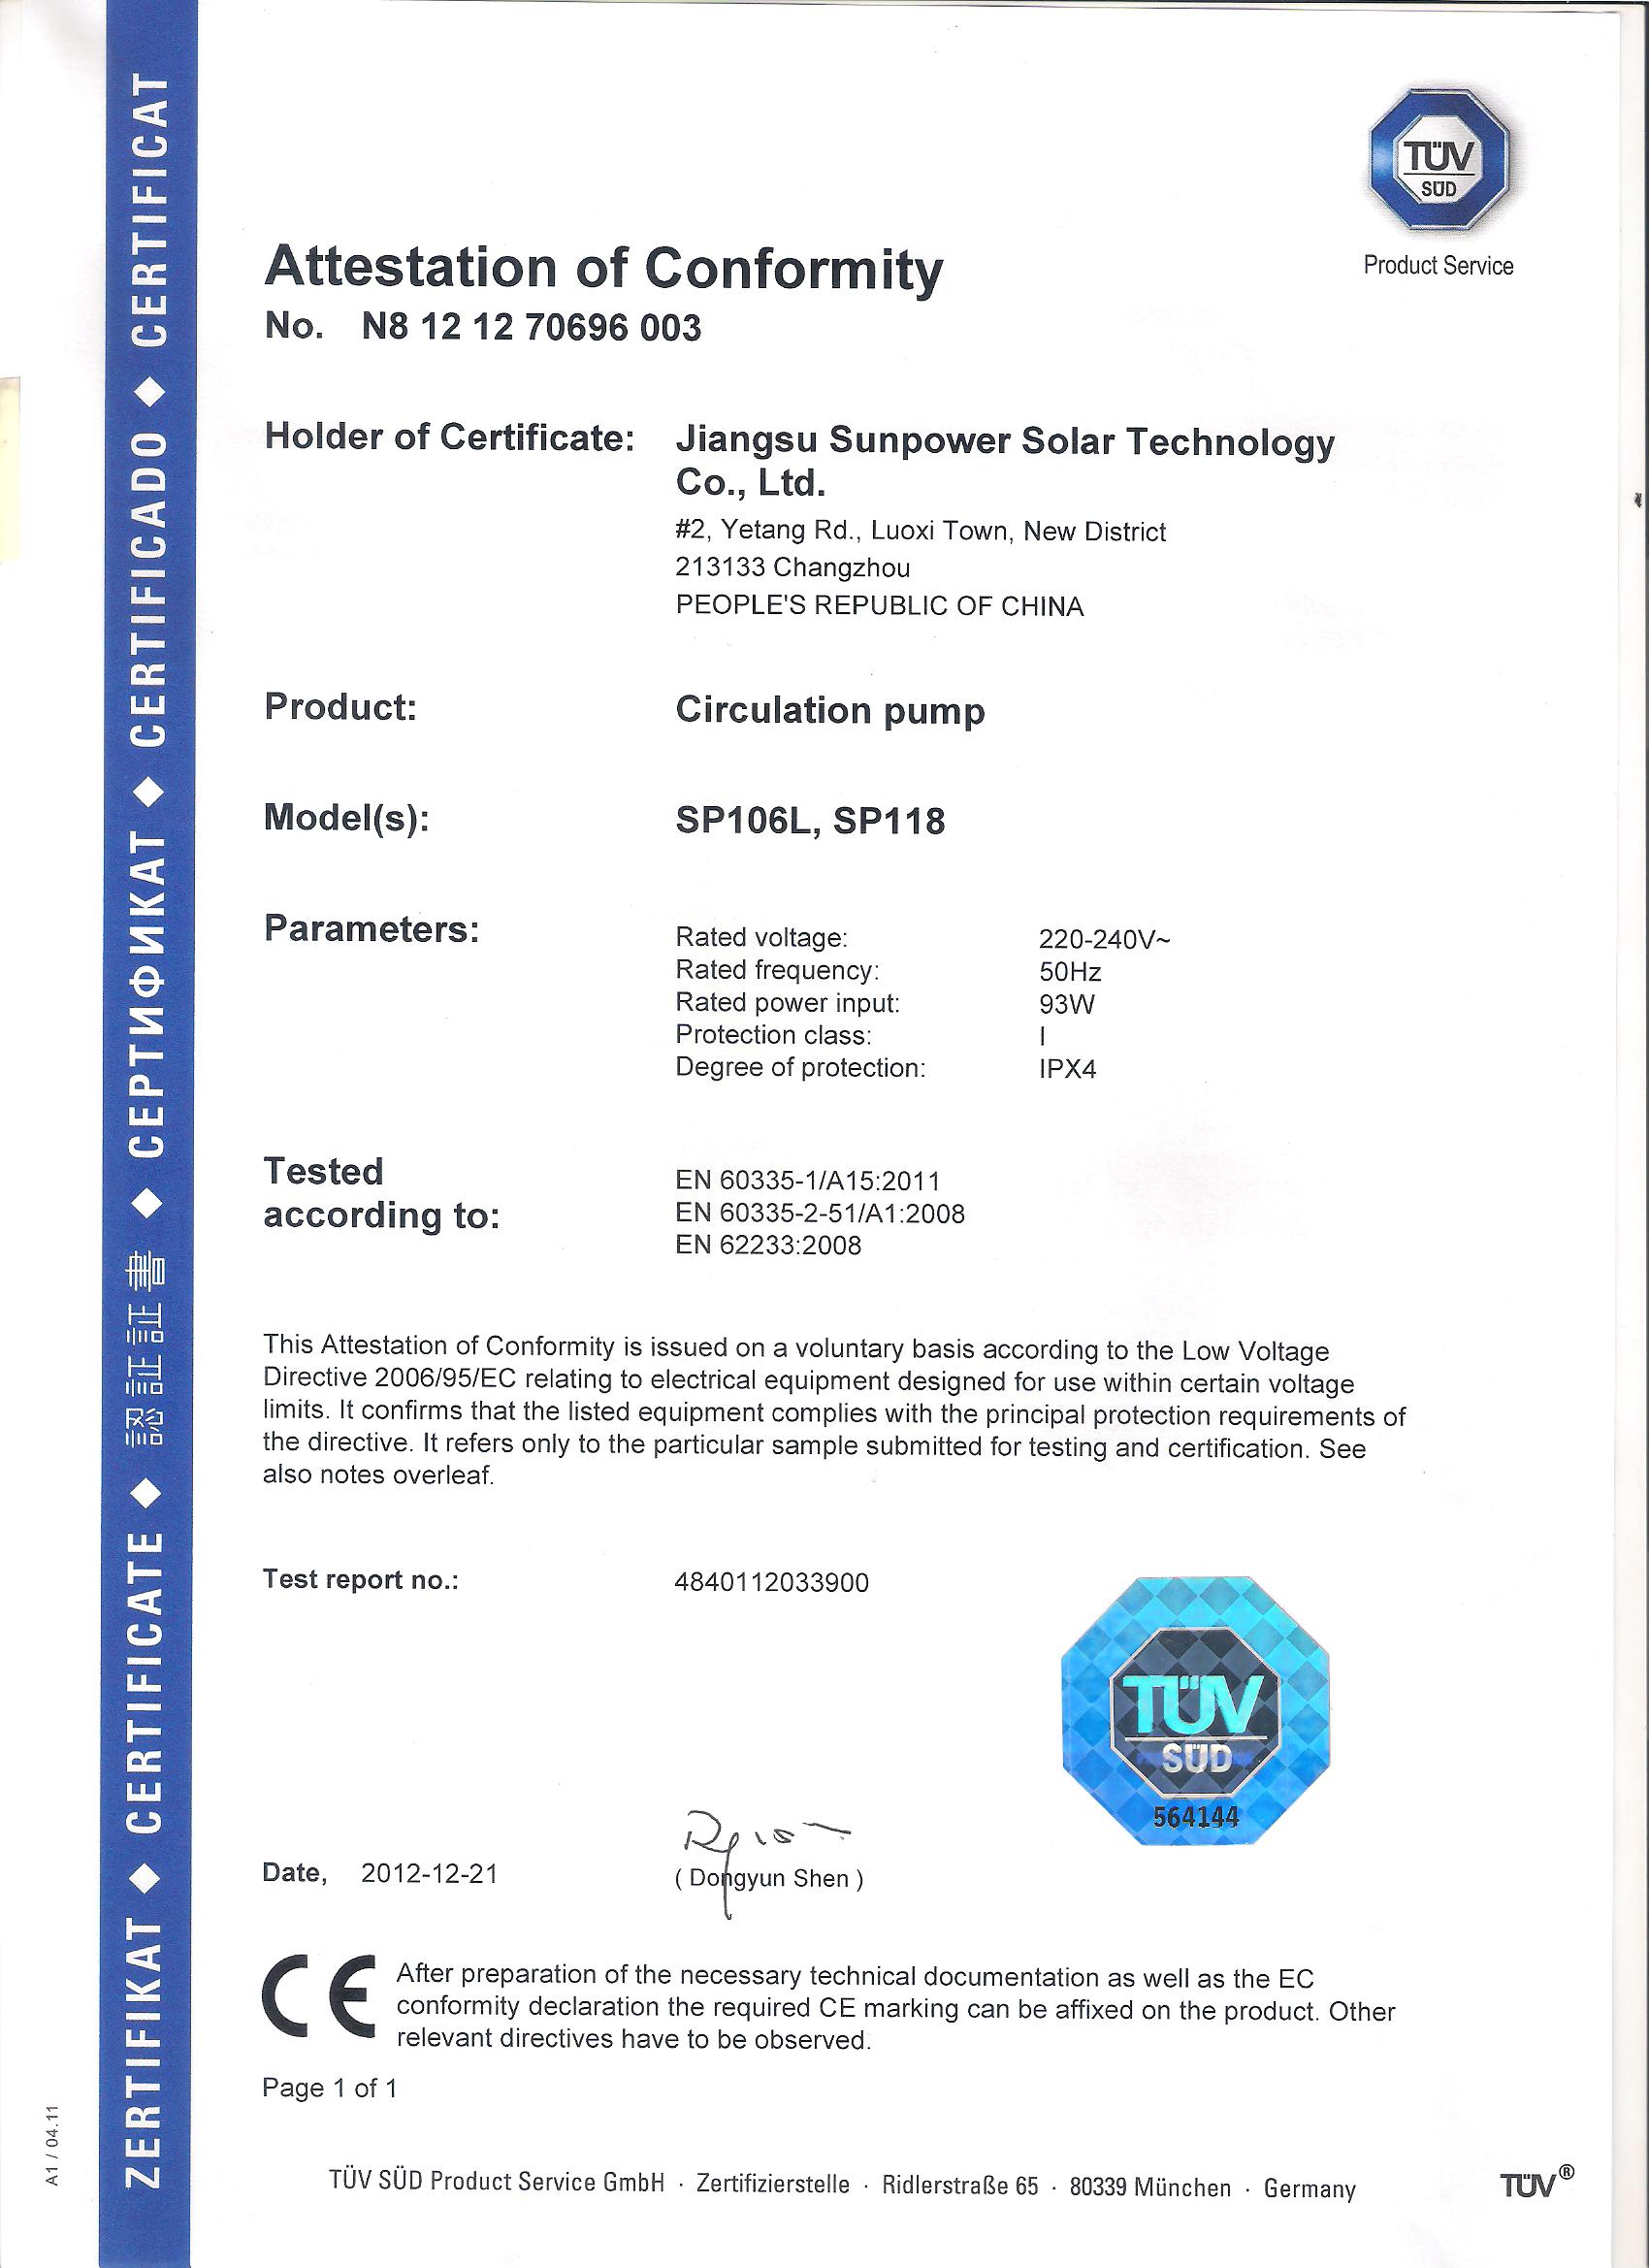 circulation pump CE certificate